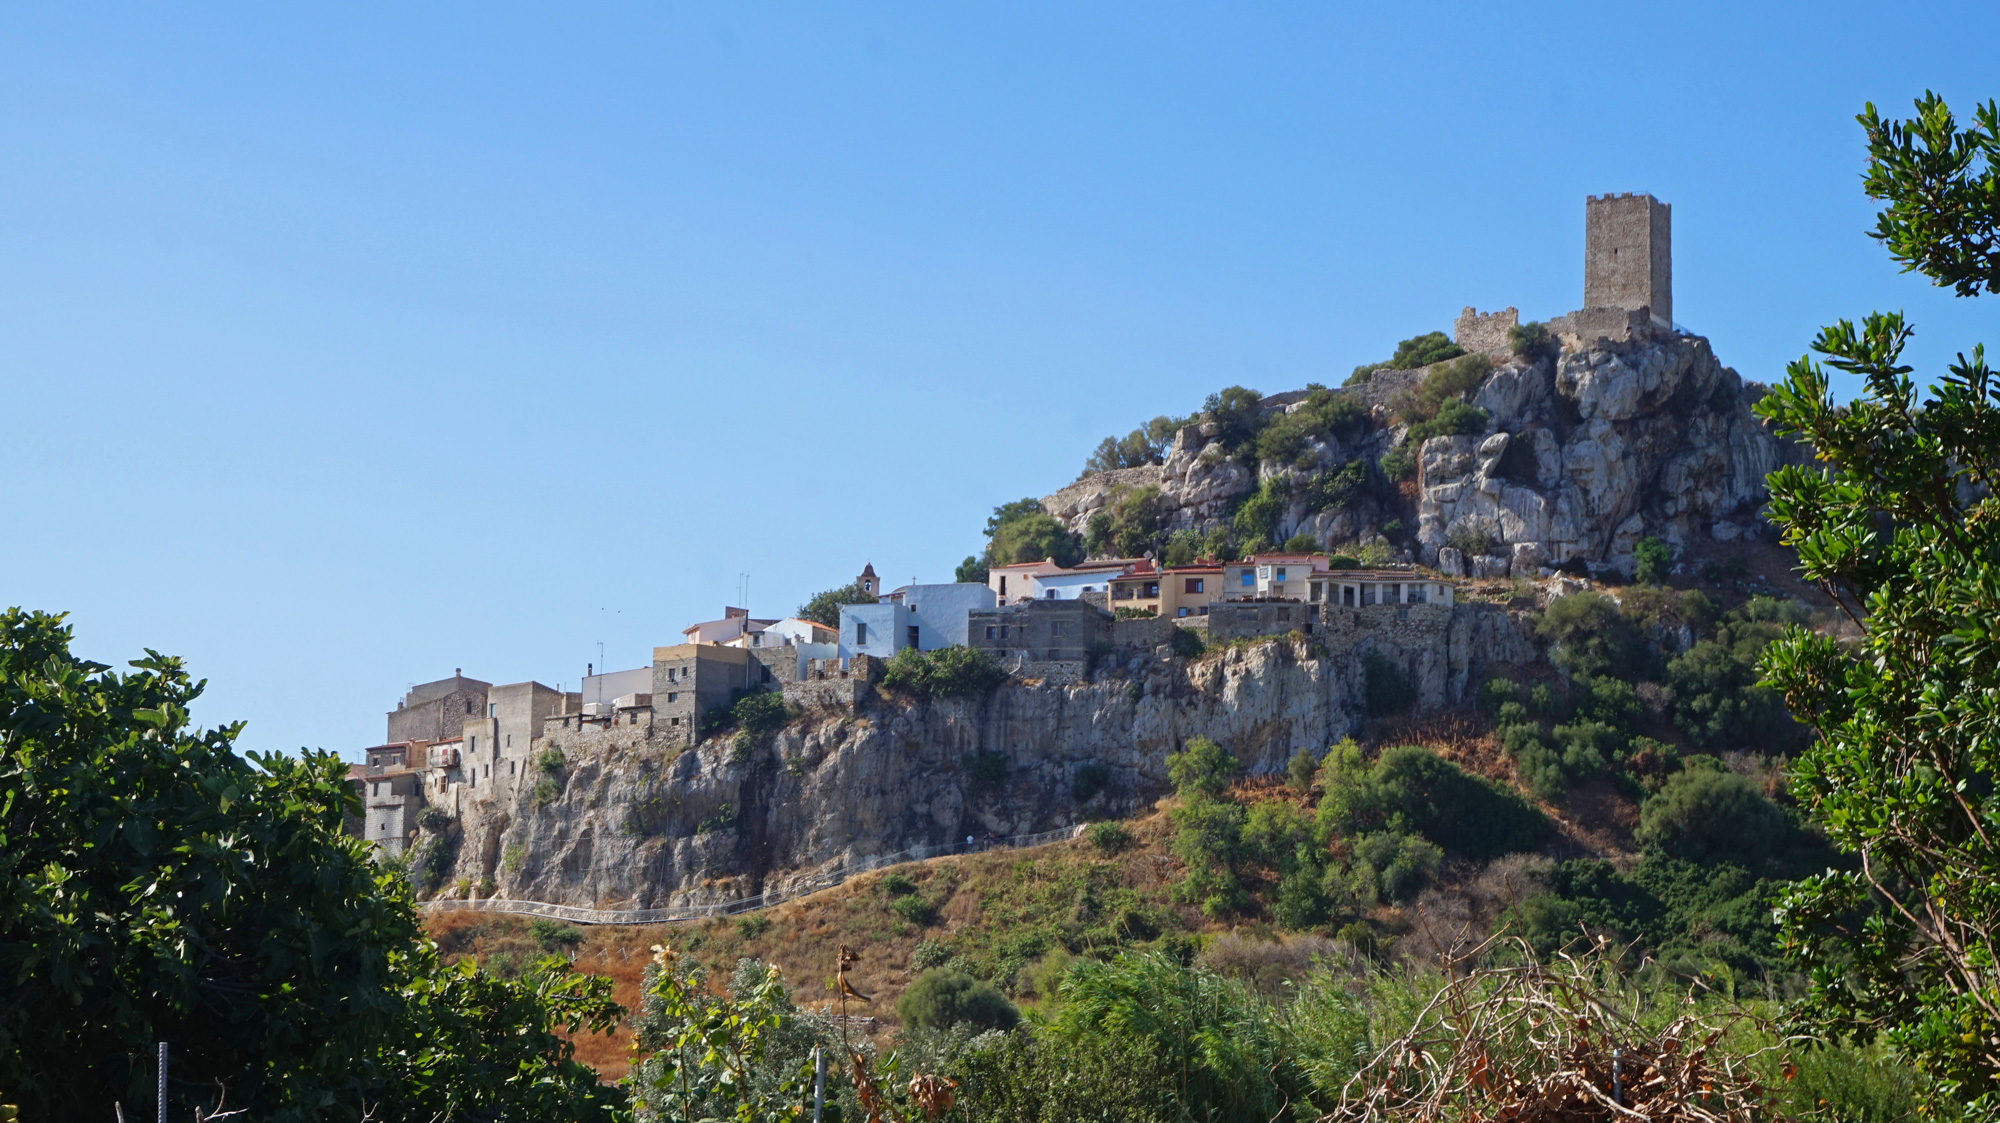 Posada mit seinem Sarazenenturm und der Altstadt im Felsen.